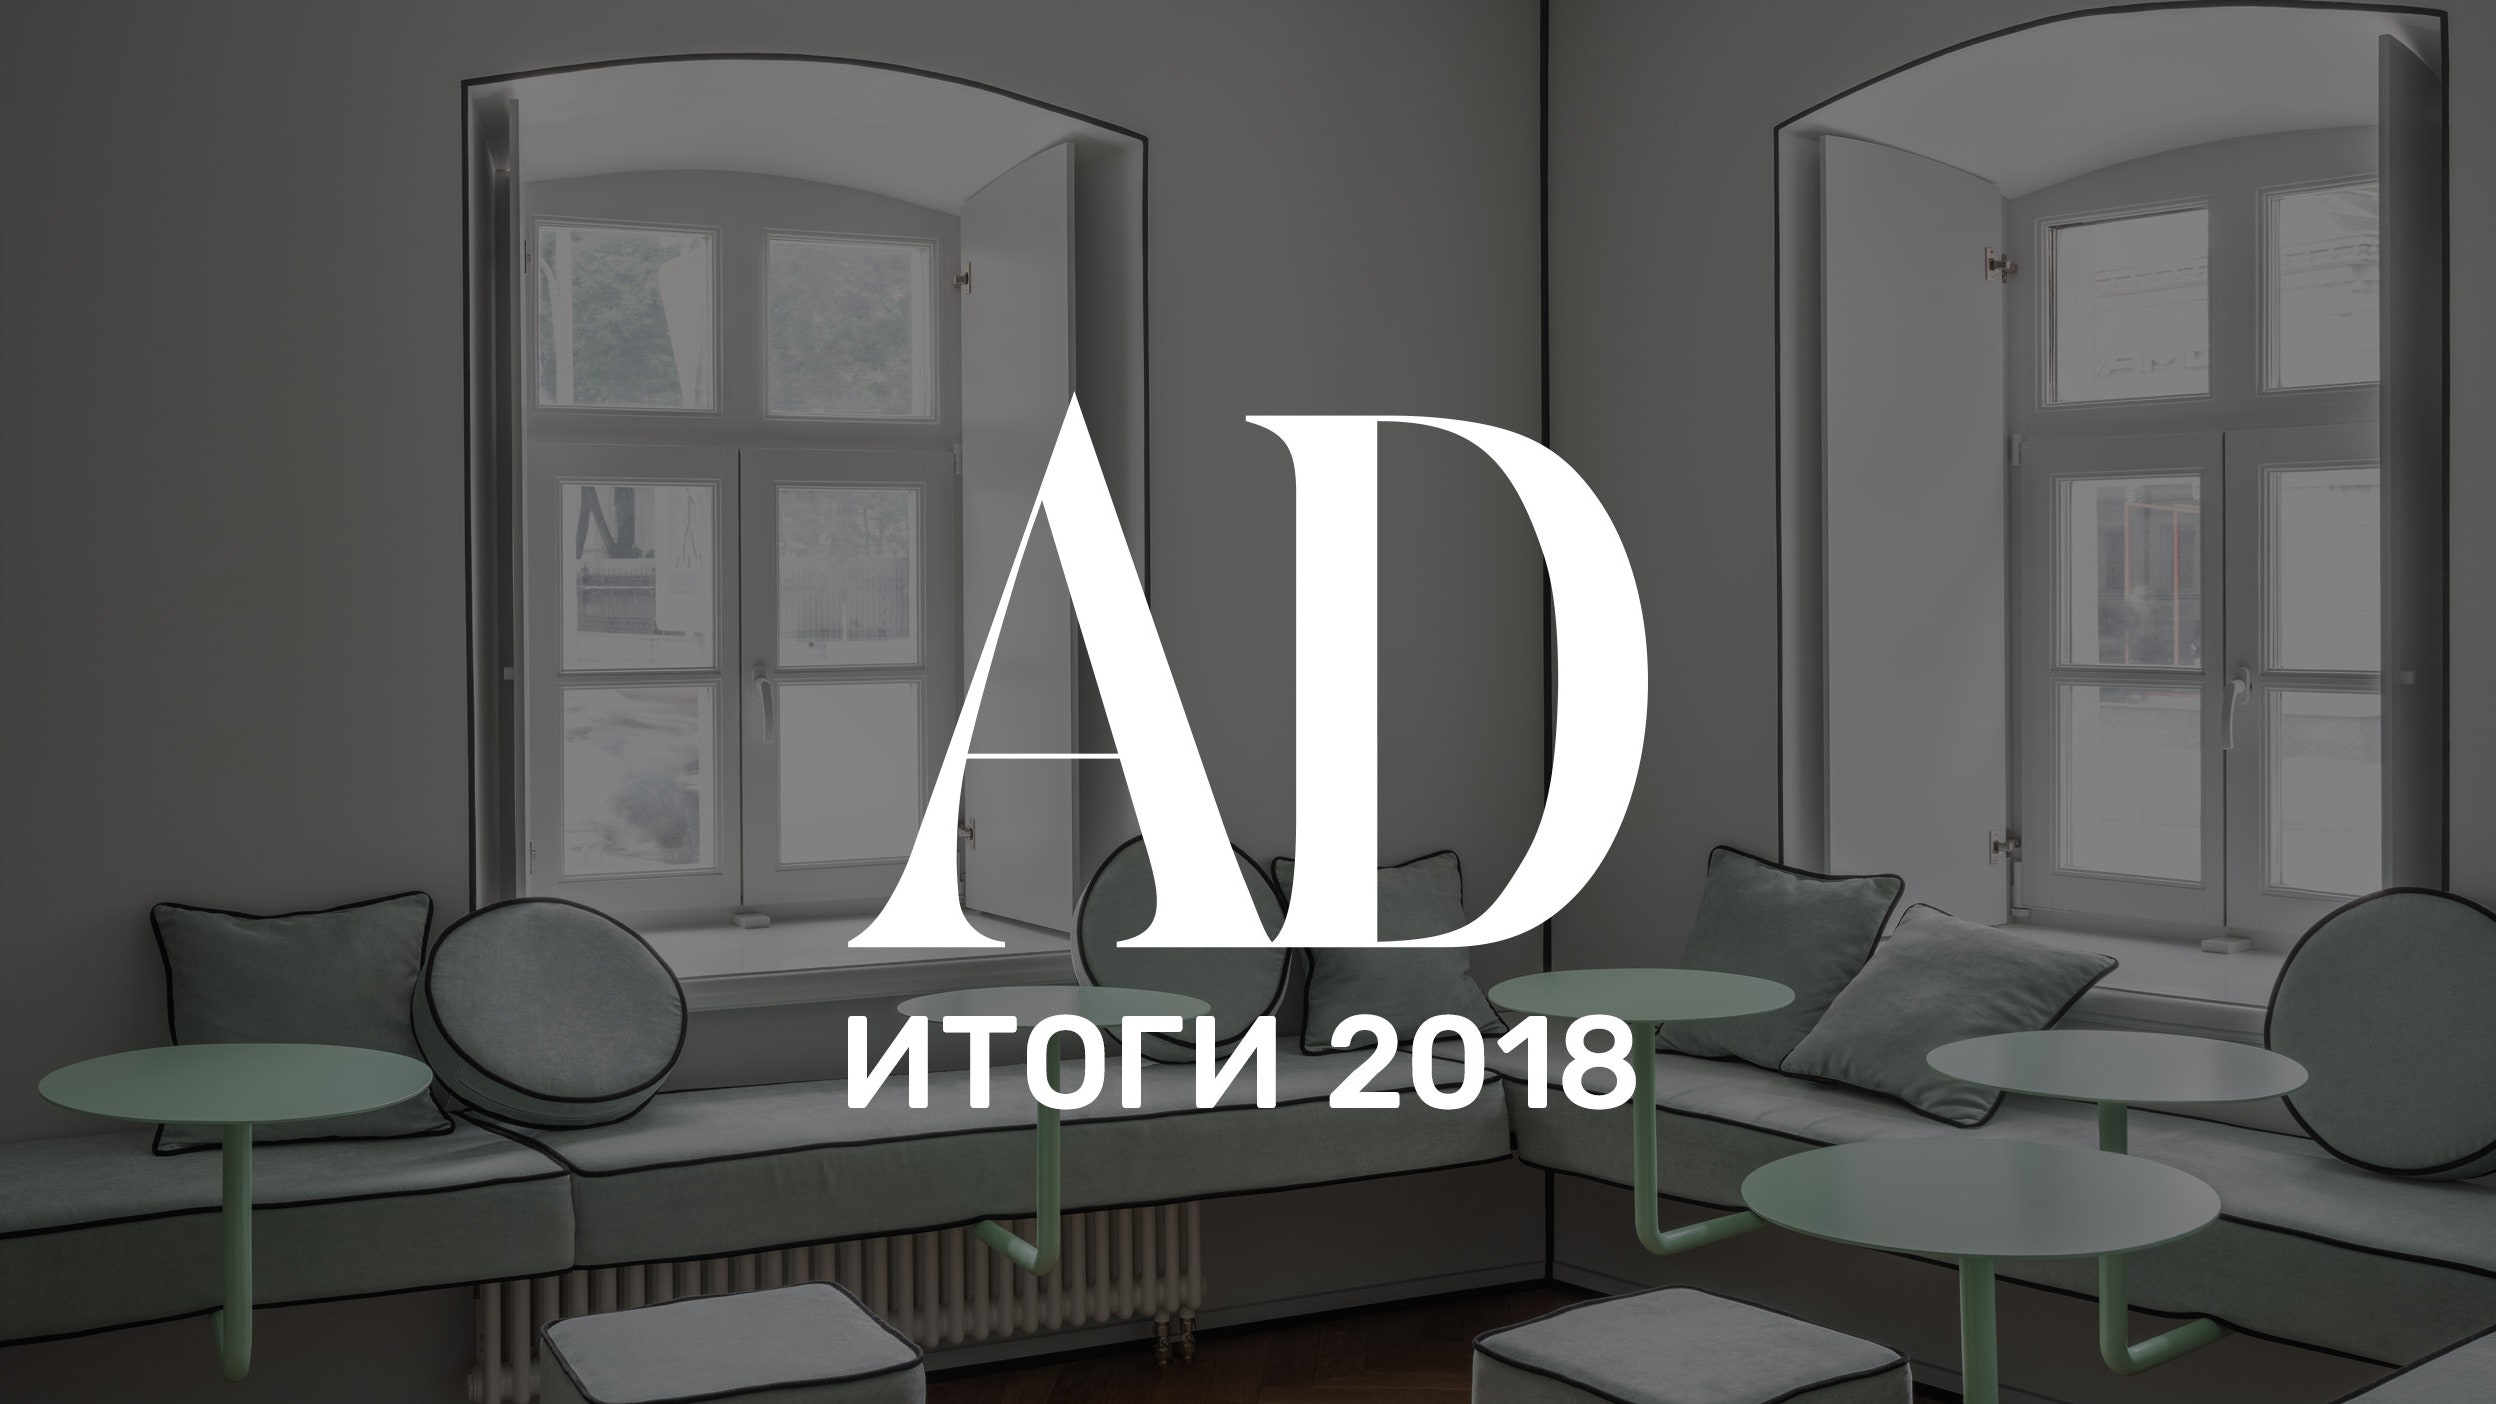 Итоги 2018 главные имена события и тенденции в мире дизайна от Анастасии Ромашкевич